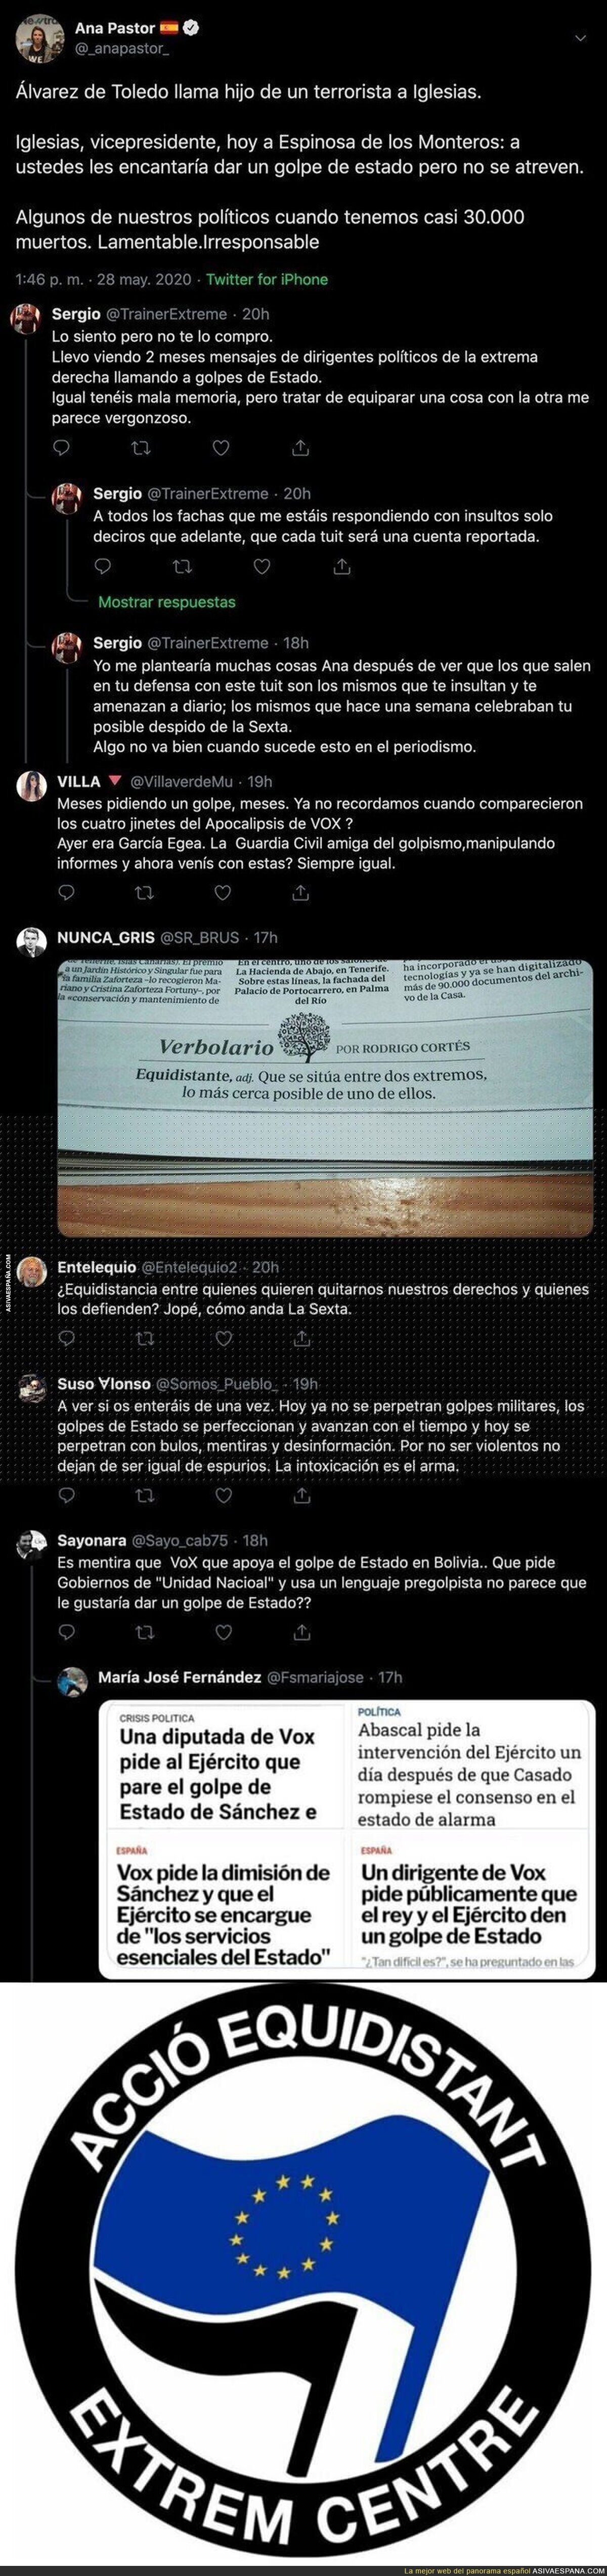 La periodista Ana Pastor se gana el aplauso de los votantes de VOX con este mensaje equidistante total